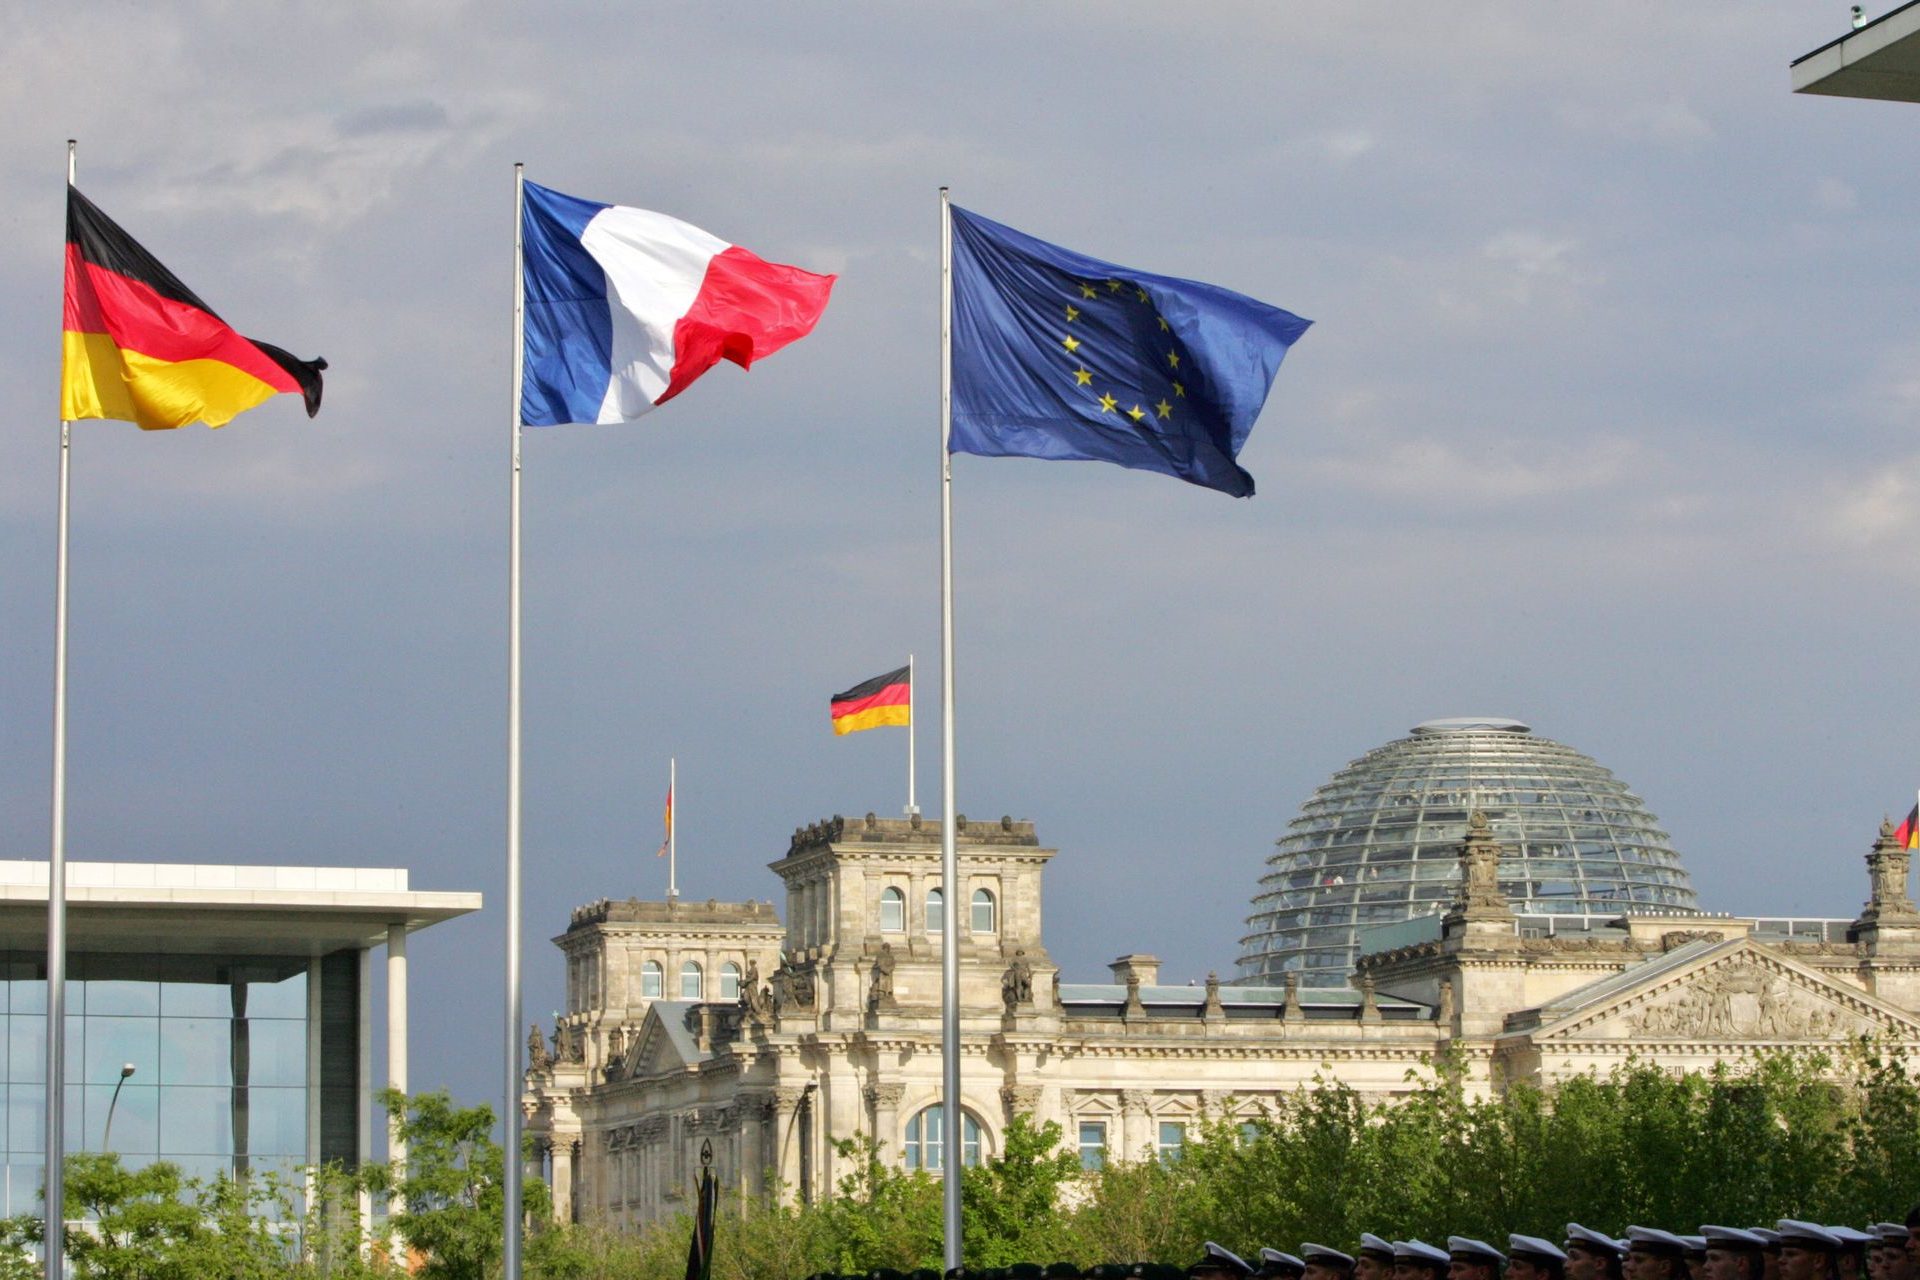 Stärkung der Beziehungen zwischen europäischen Ländern